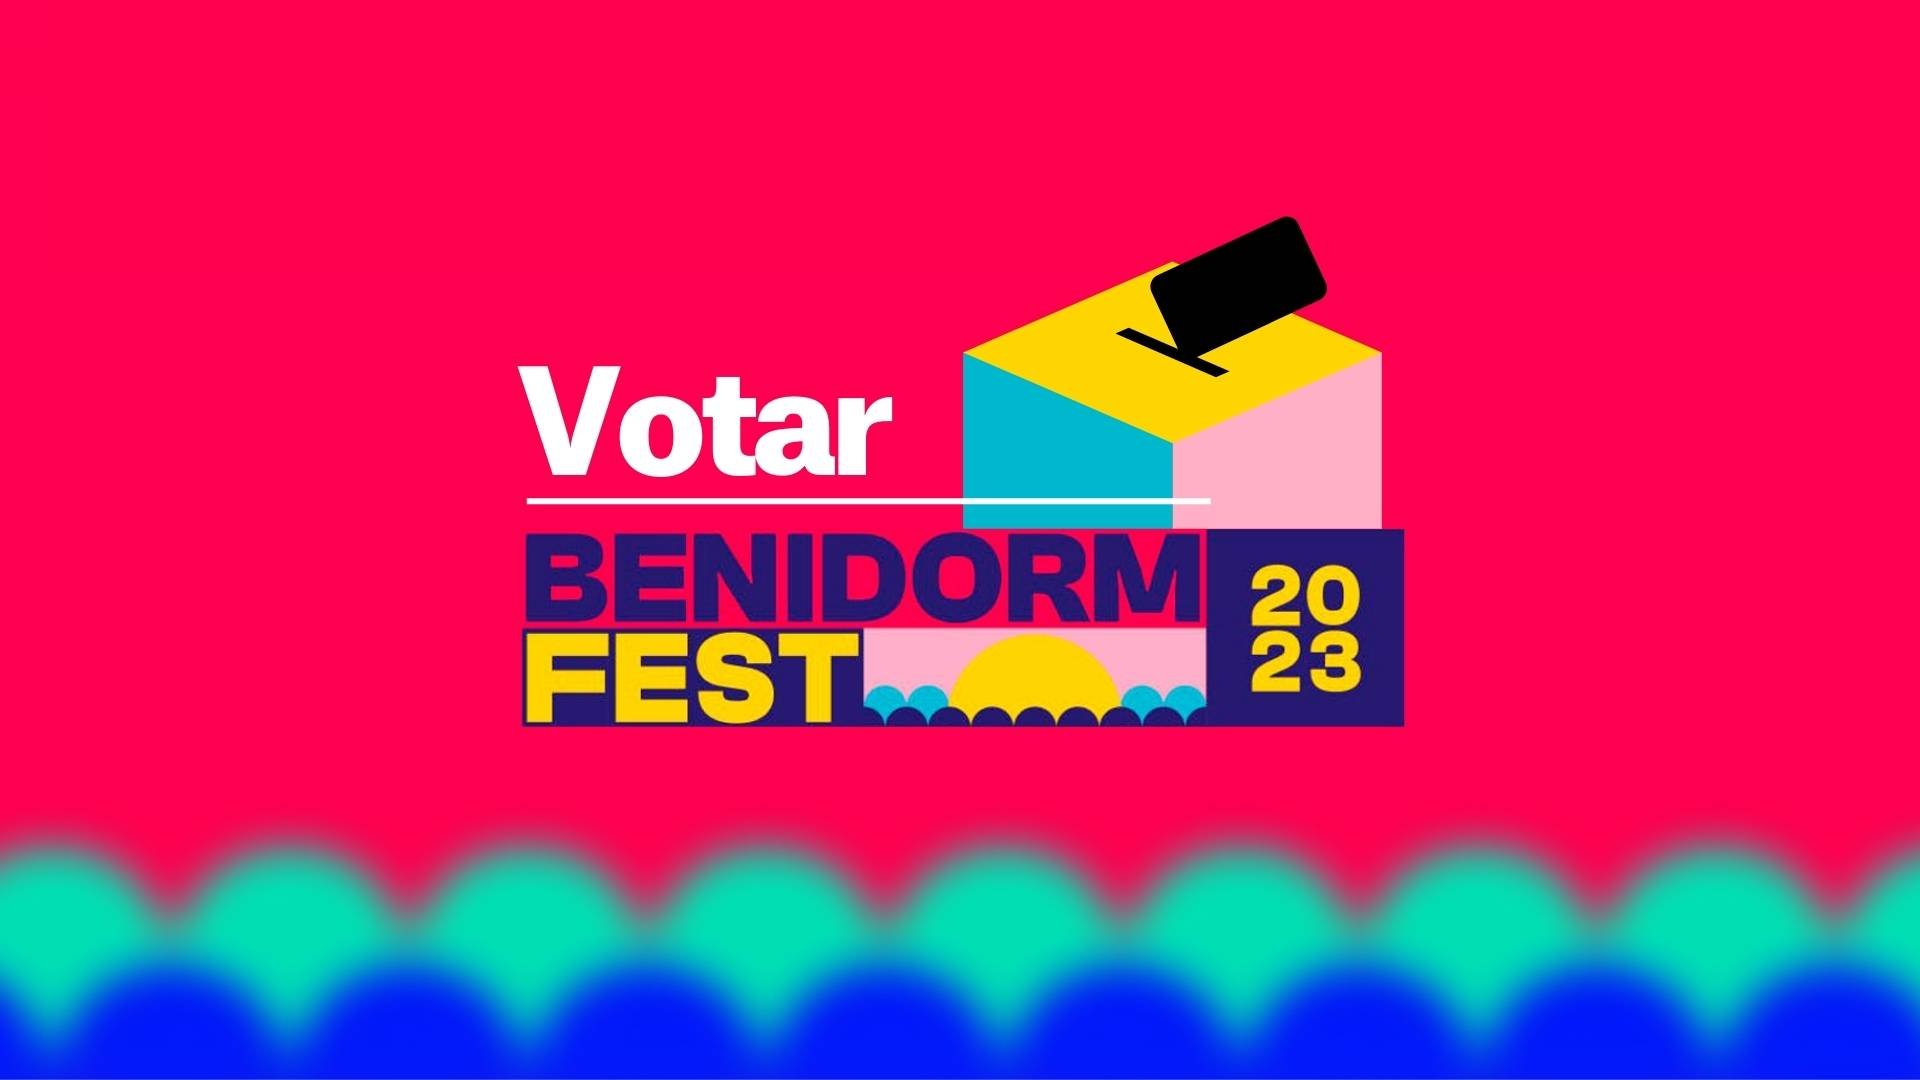 Cómo votar en el Benidorm Fest 2023: elige al representante para Eurovisión 2023